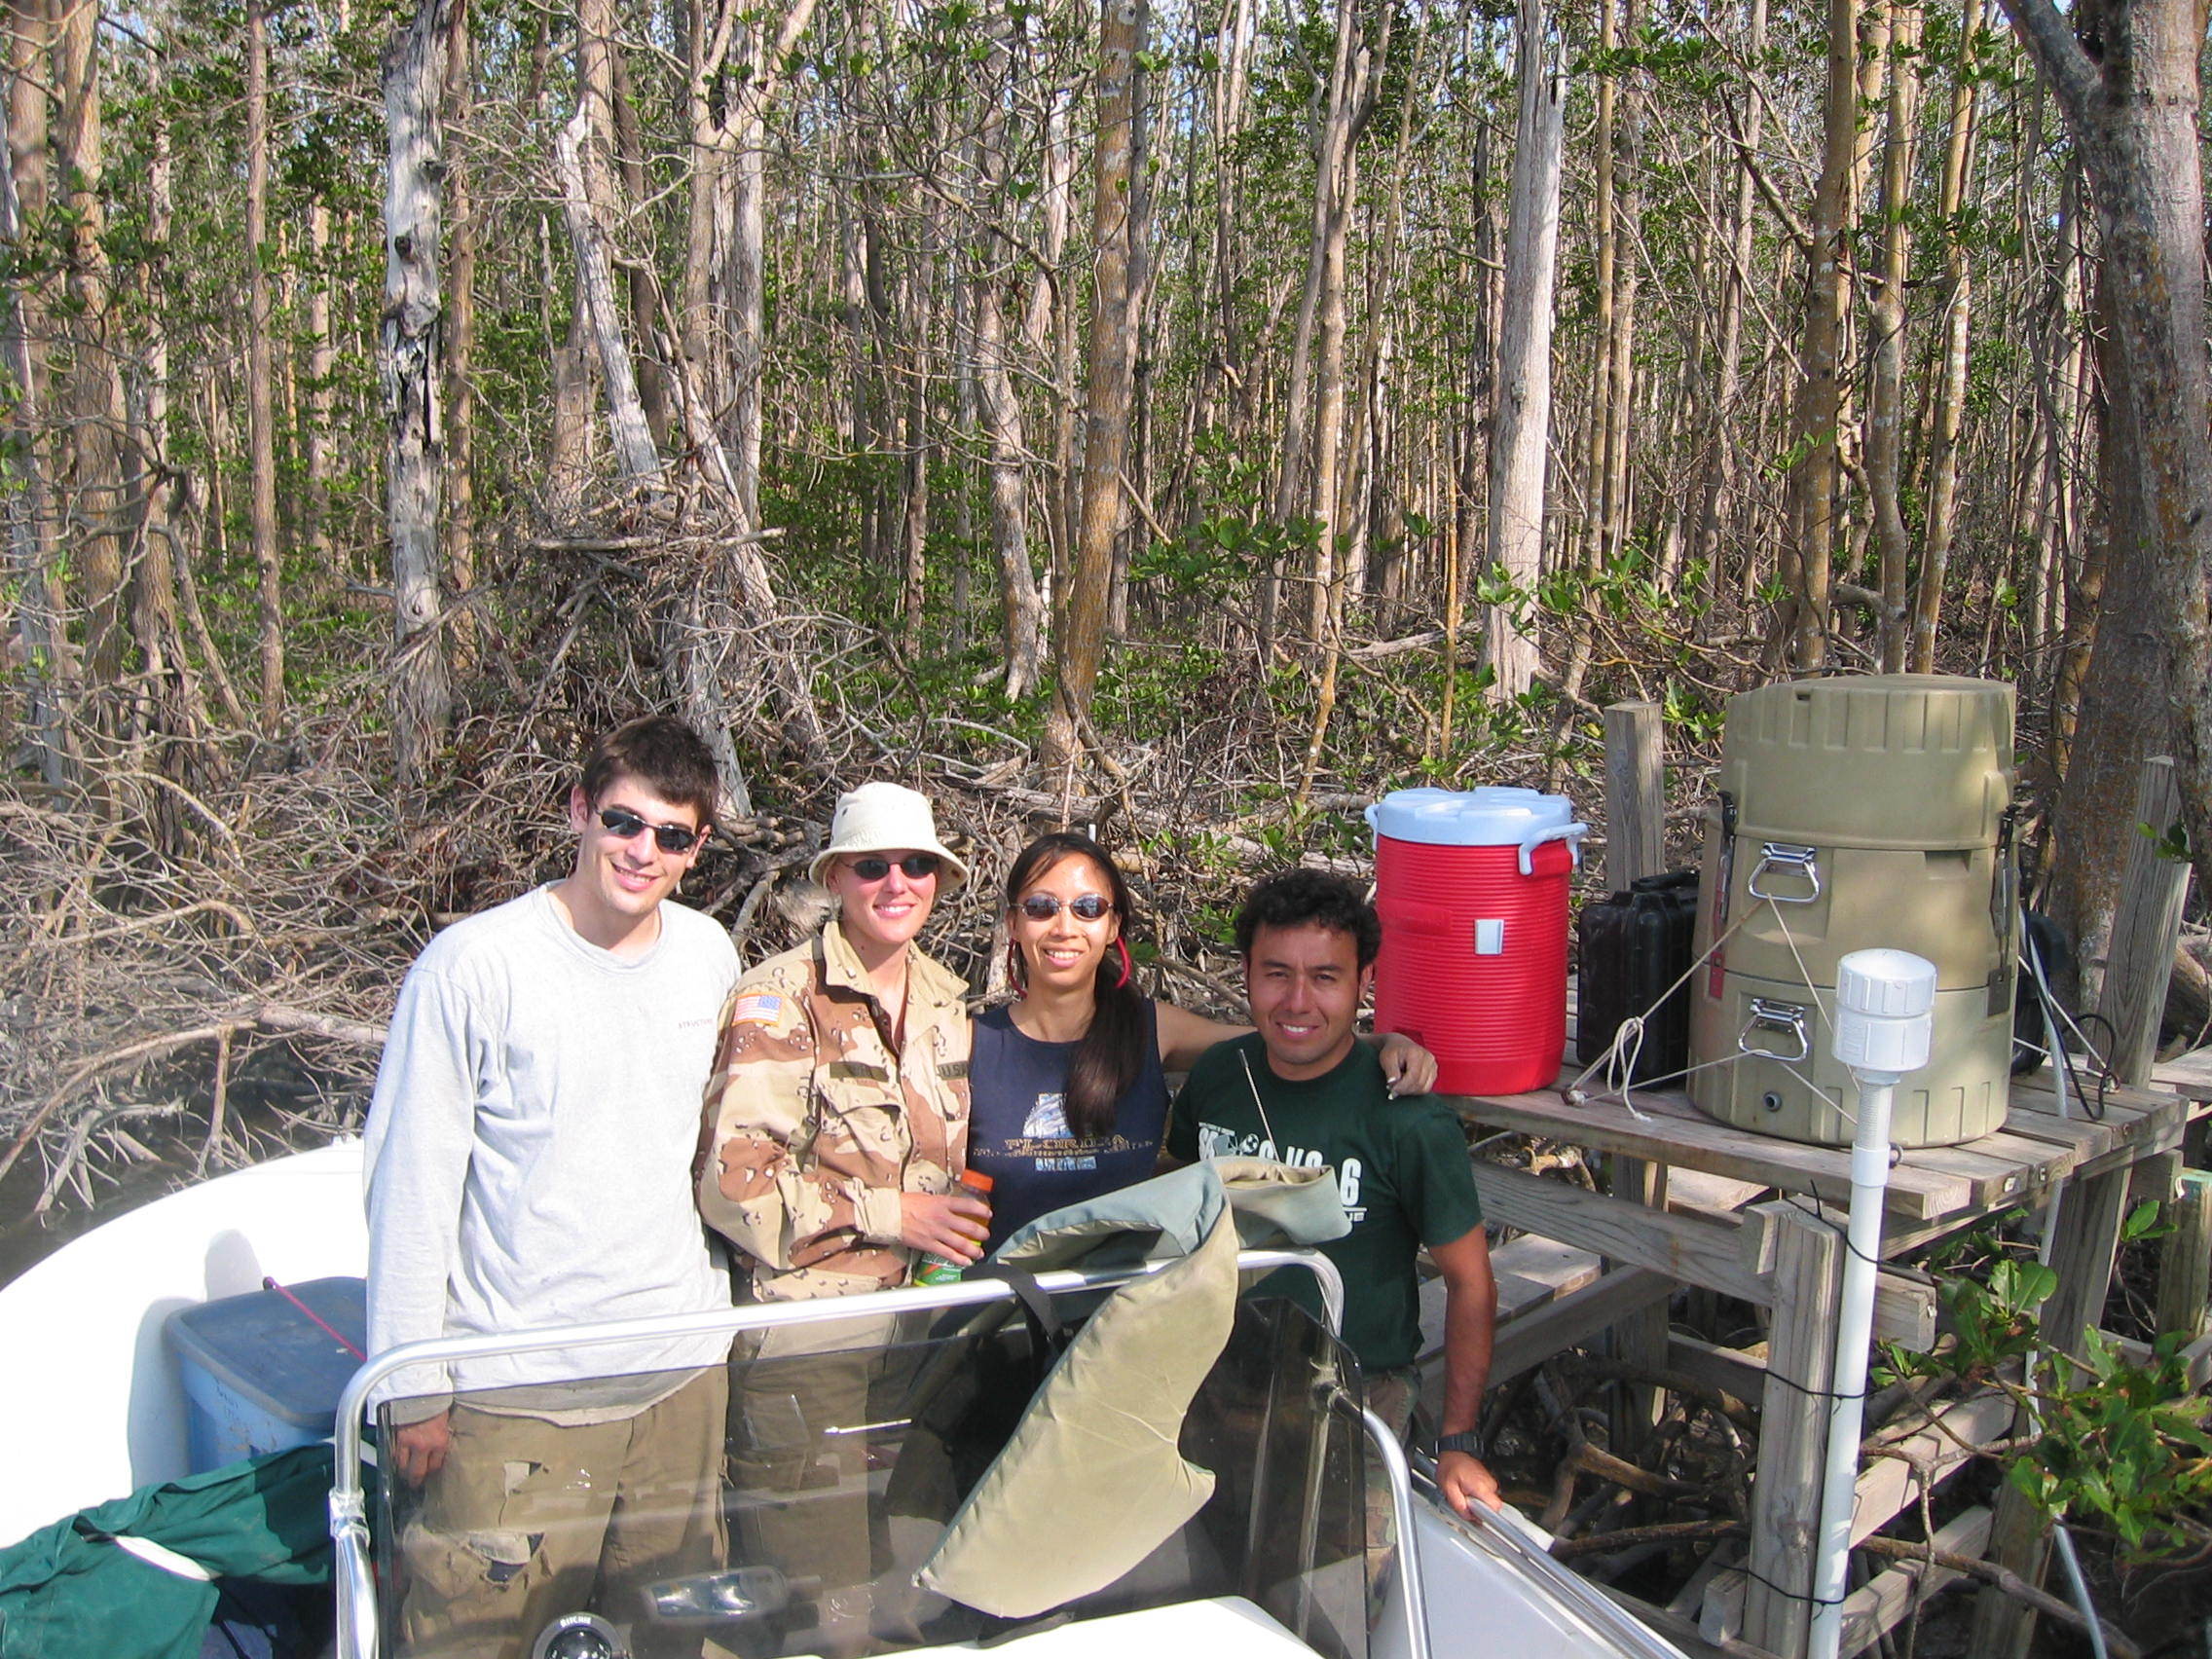 Left to right: Greg Koch, Kim de Mutsert, Sharon Ewe, Edward Castaneda taking a break during sampling at SRS-6 in Shark River Slough